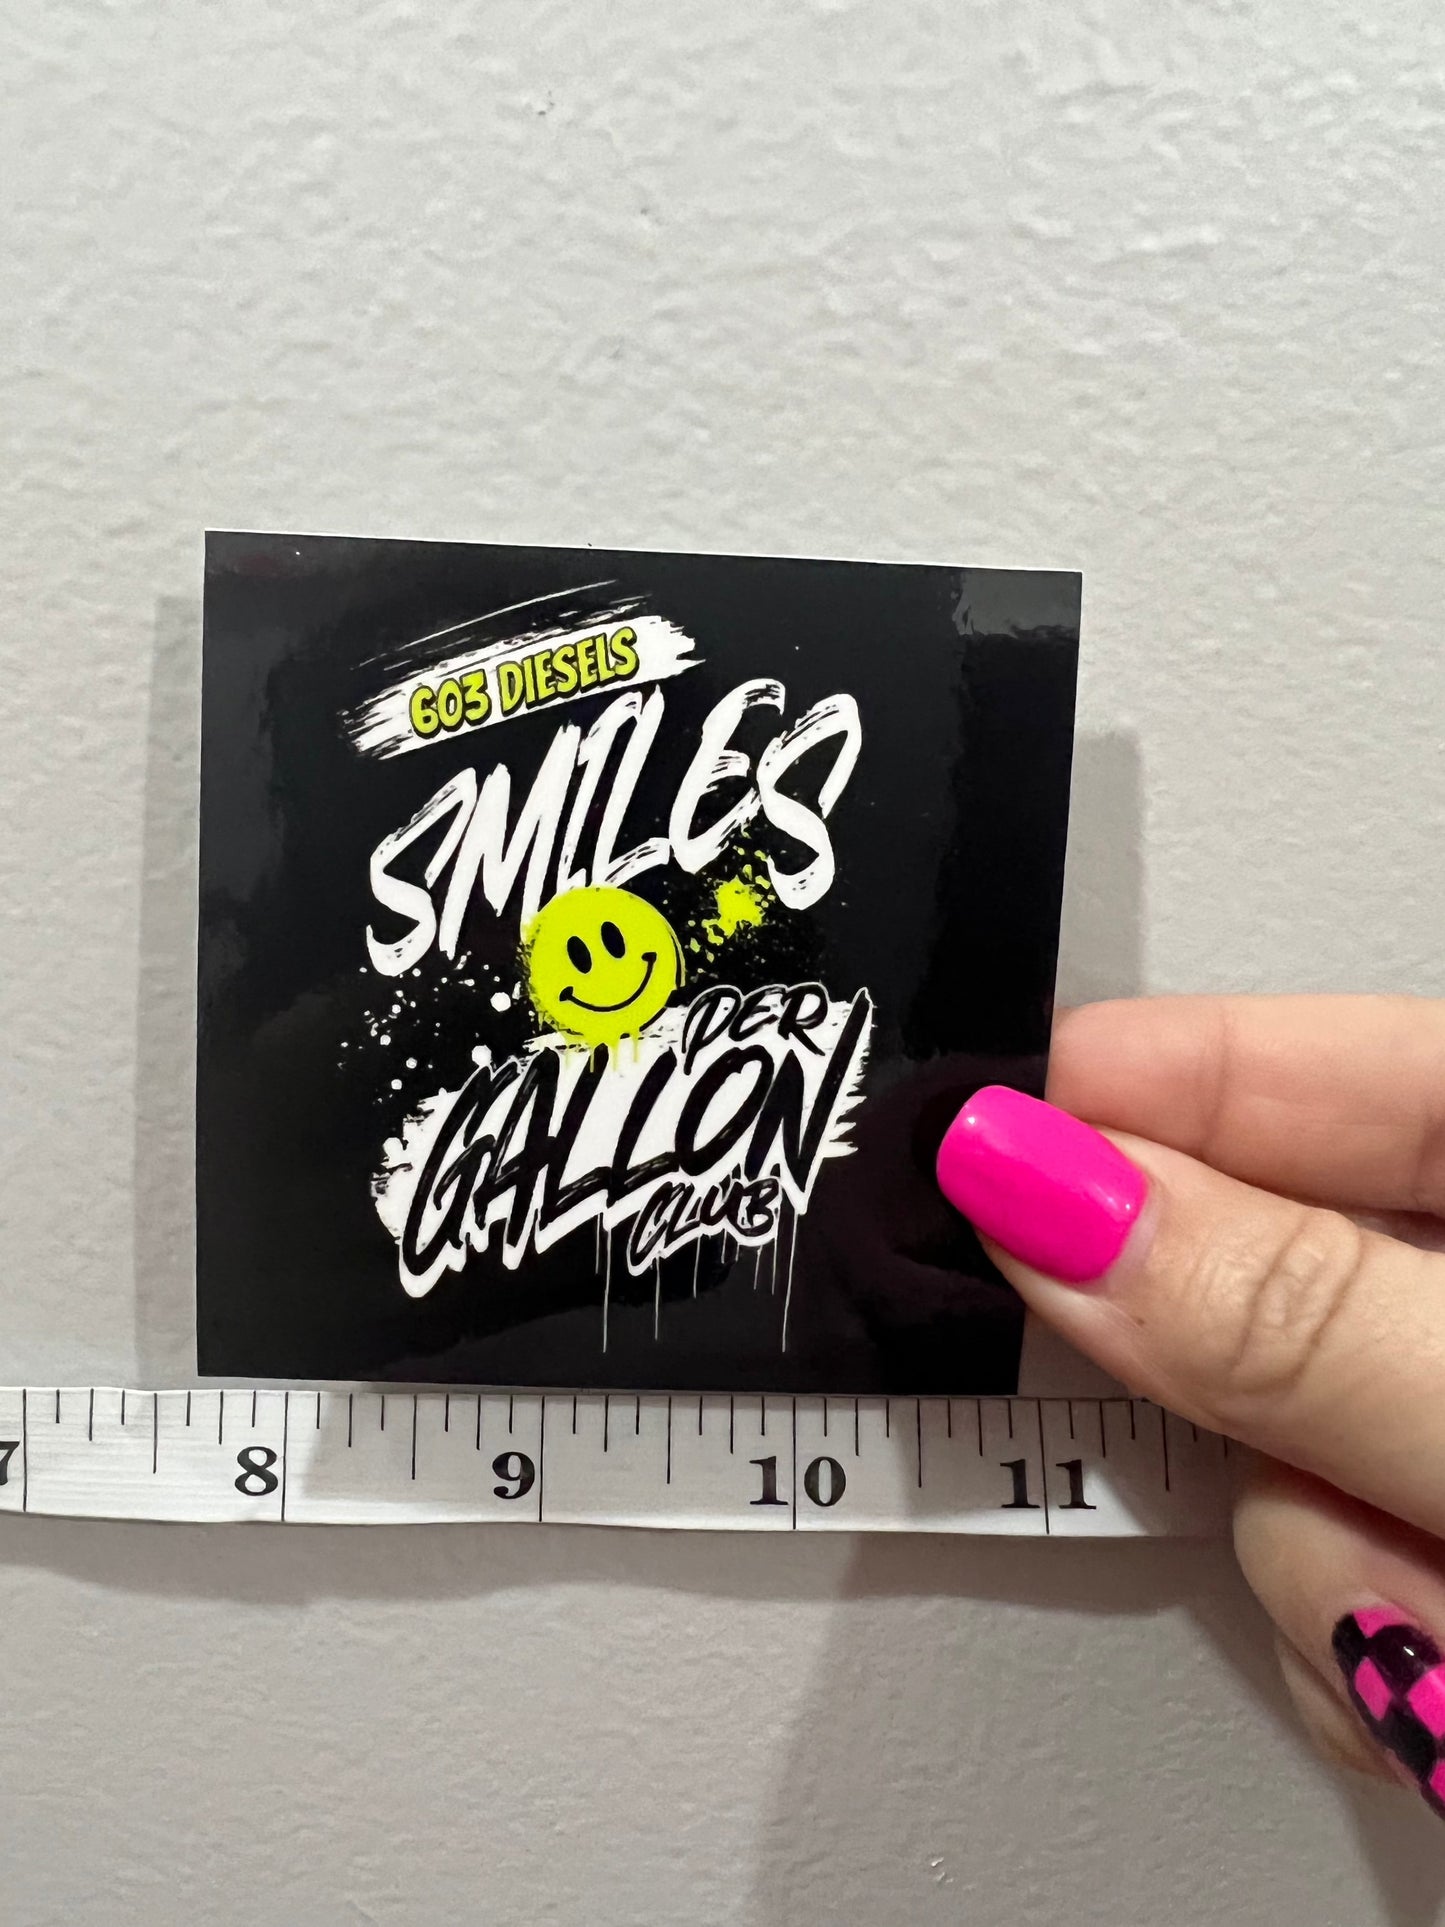 Smiles Per Gallon Club Sticker